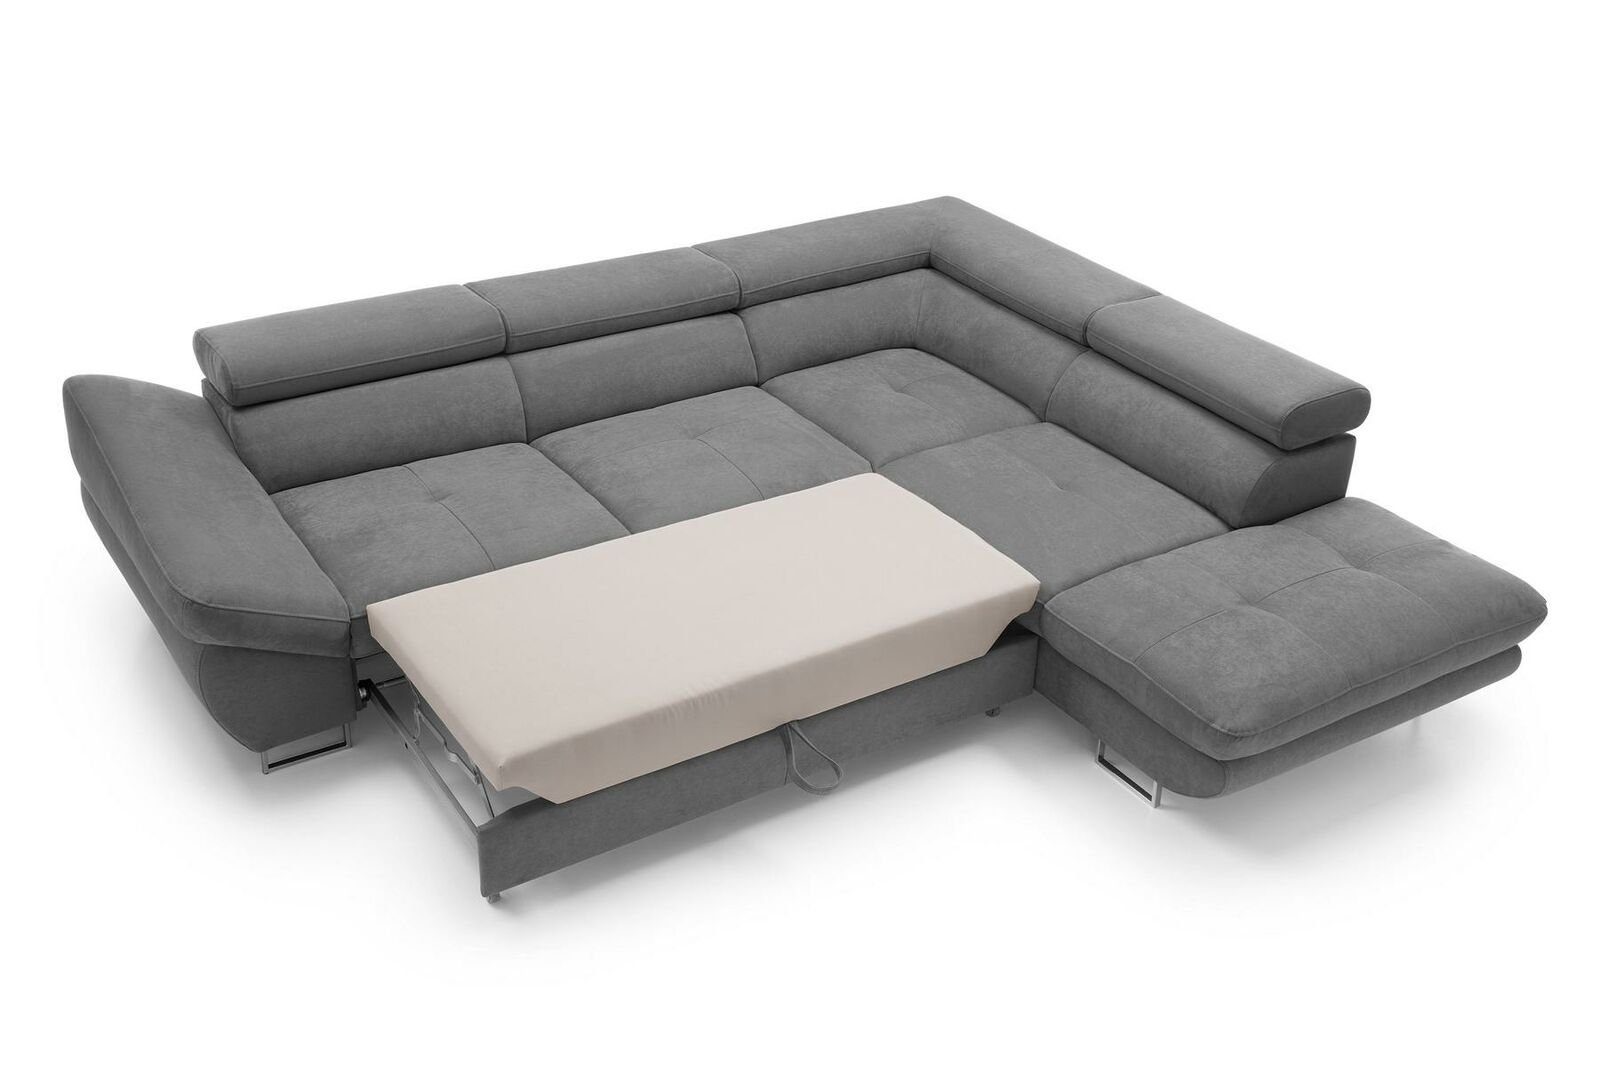 Grau weiche L-Form Sofa Sets Ecksofa, Couch Möbel Wohnbereich Polsterung Ecke JVmoebel